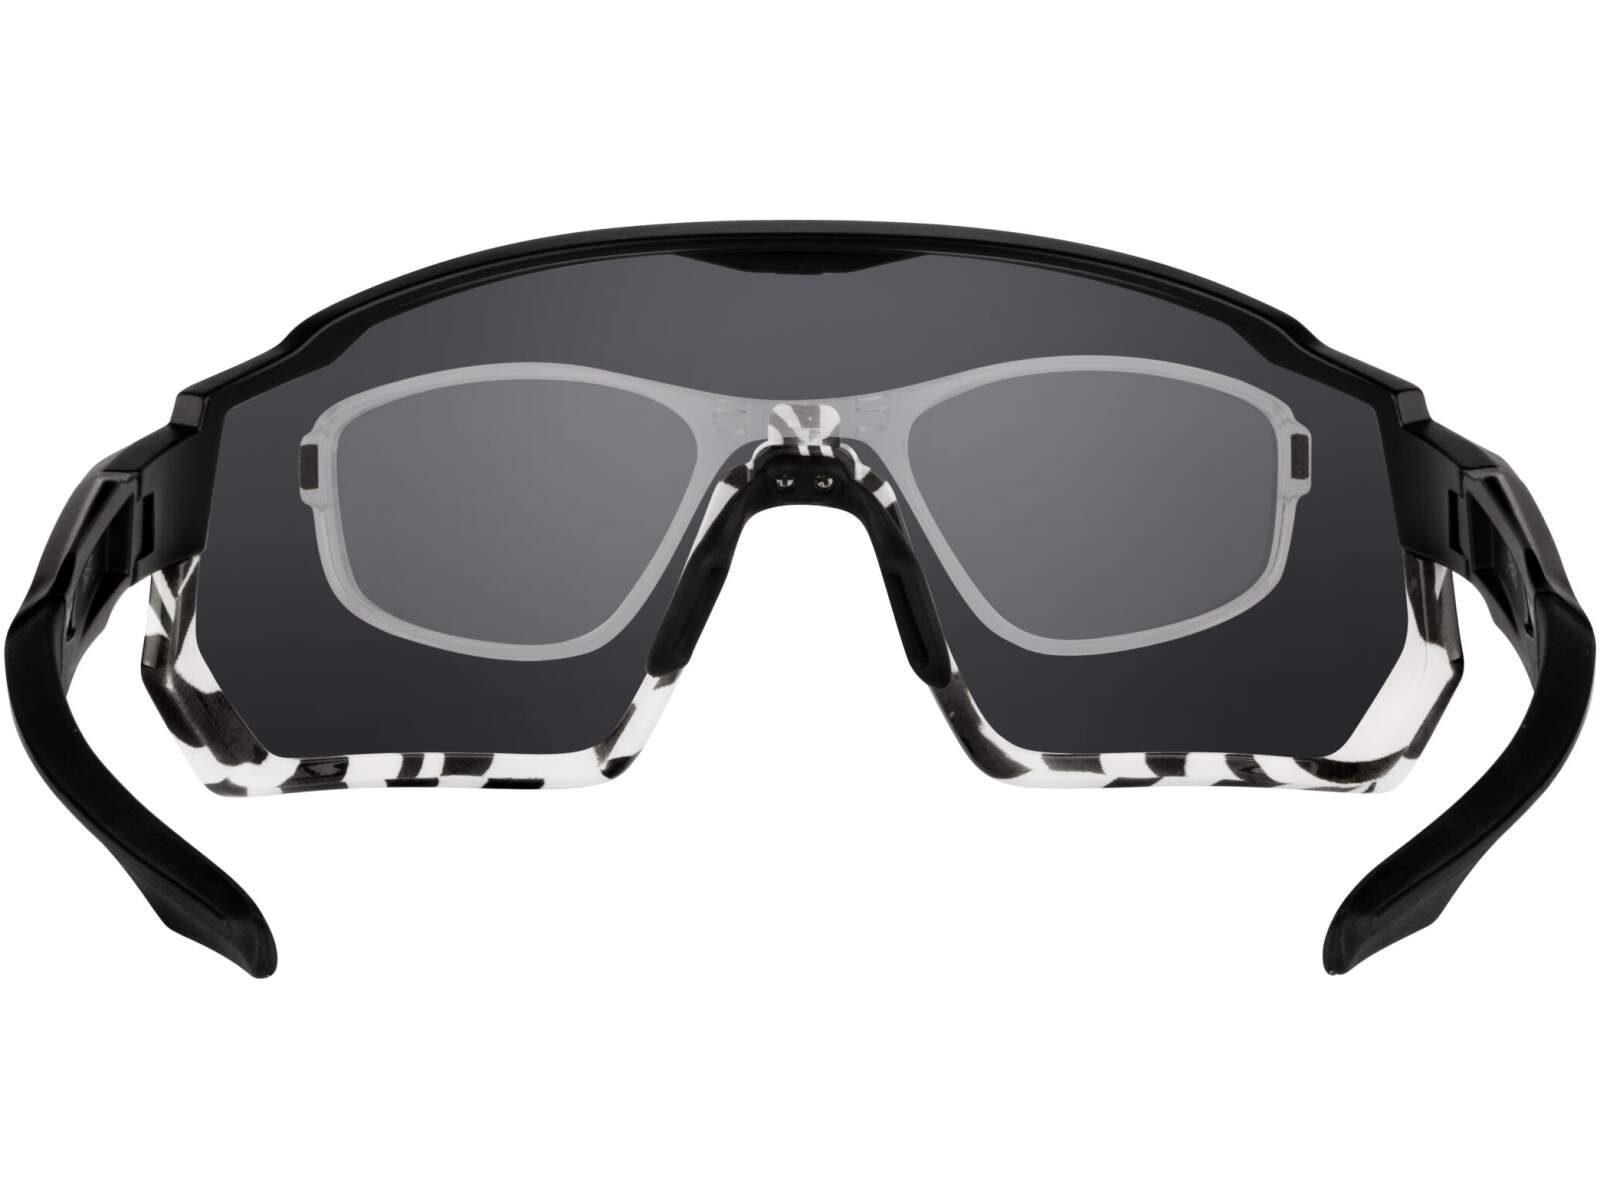 Okulary rowerowe Force DRIFT szkła czarne kontrastowe